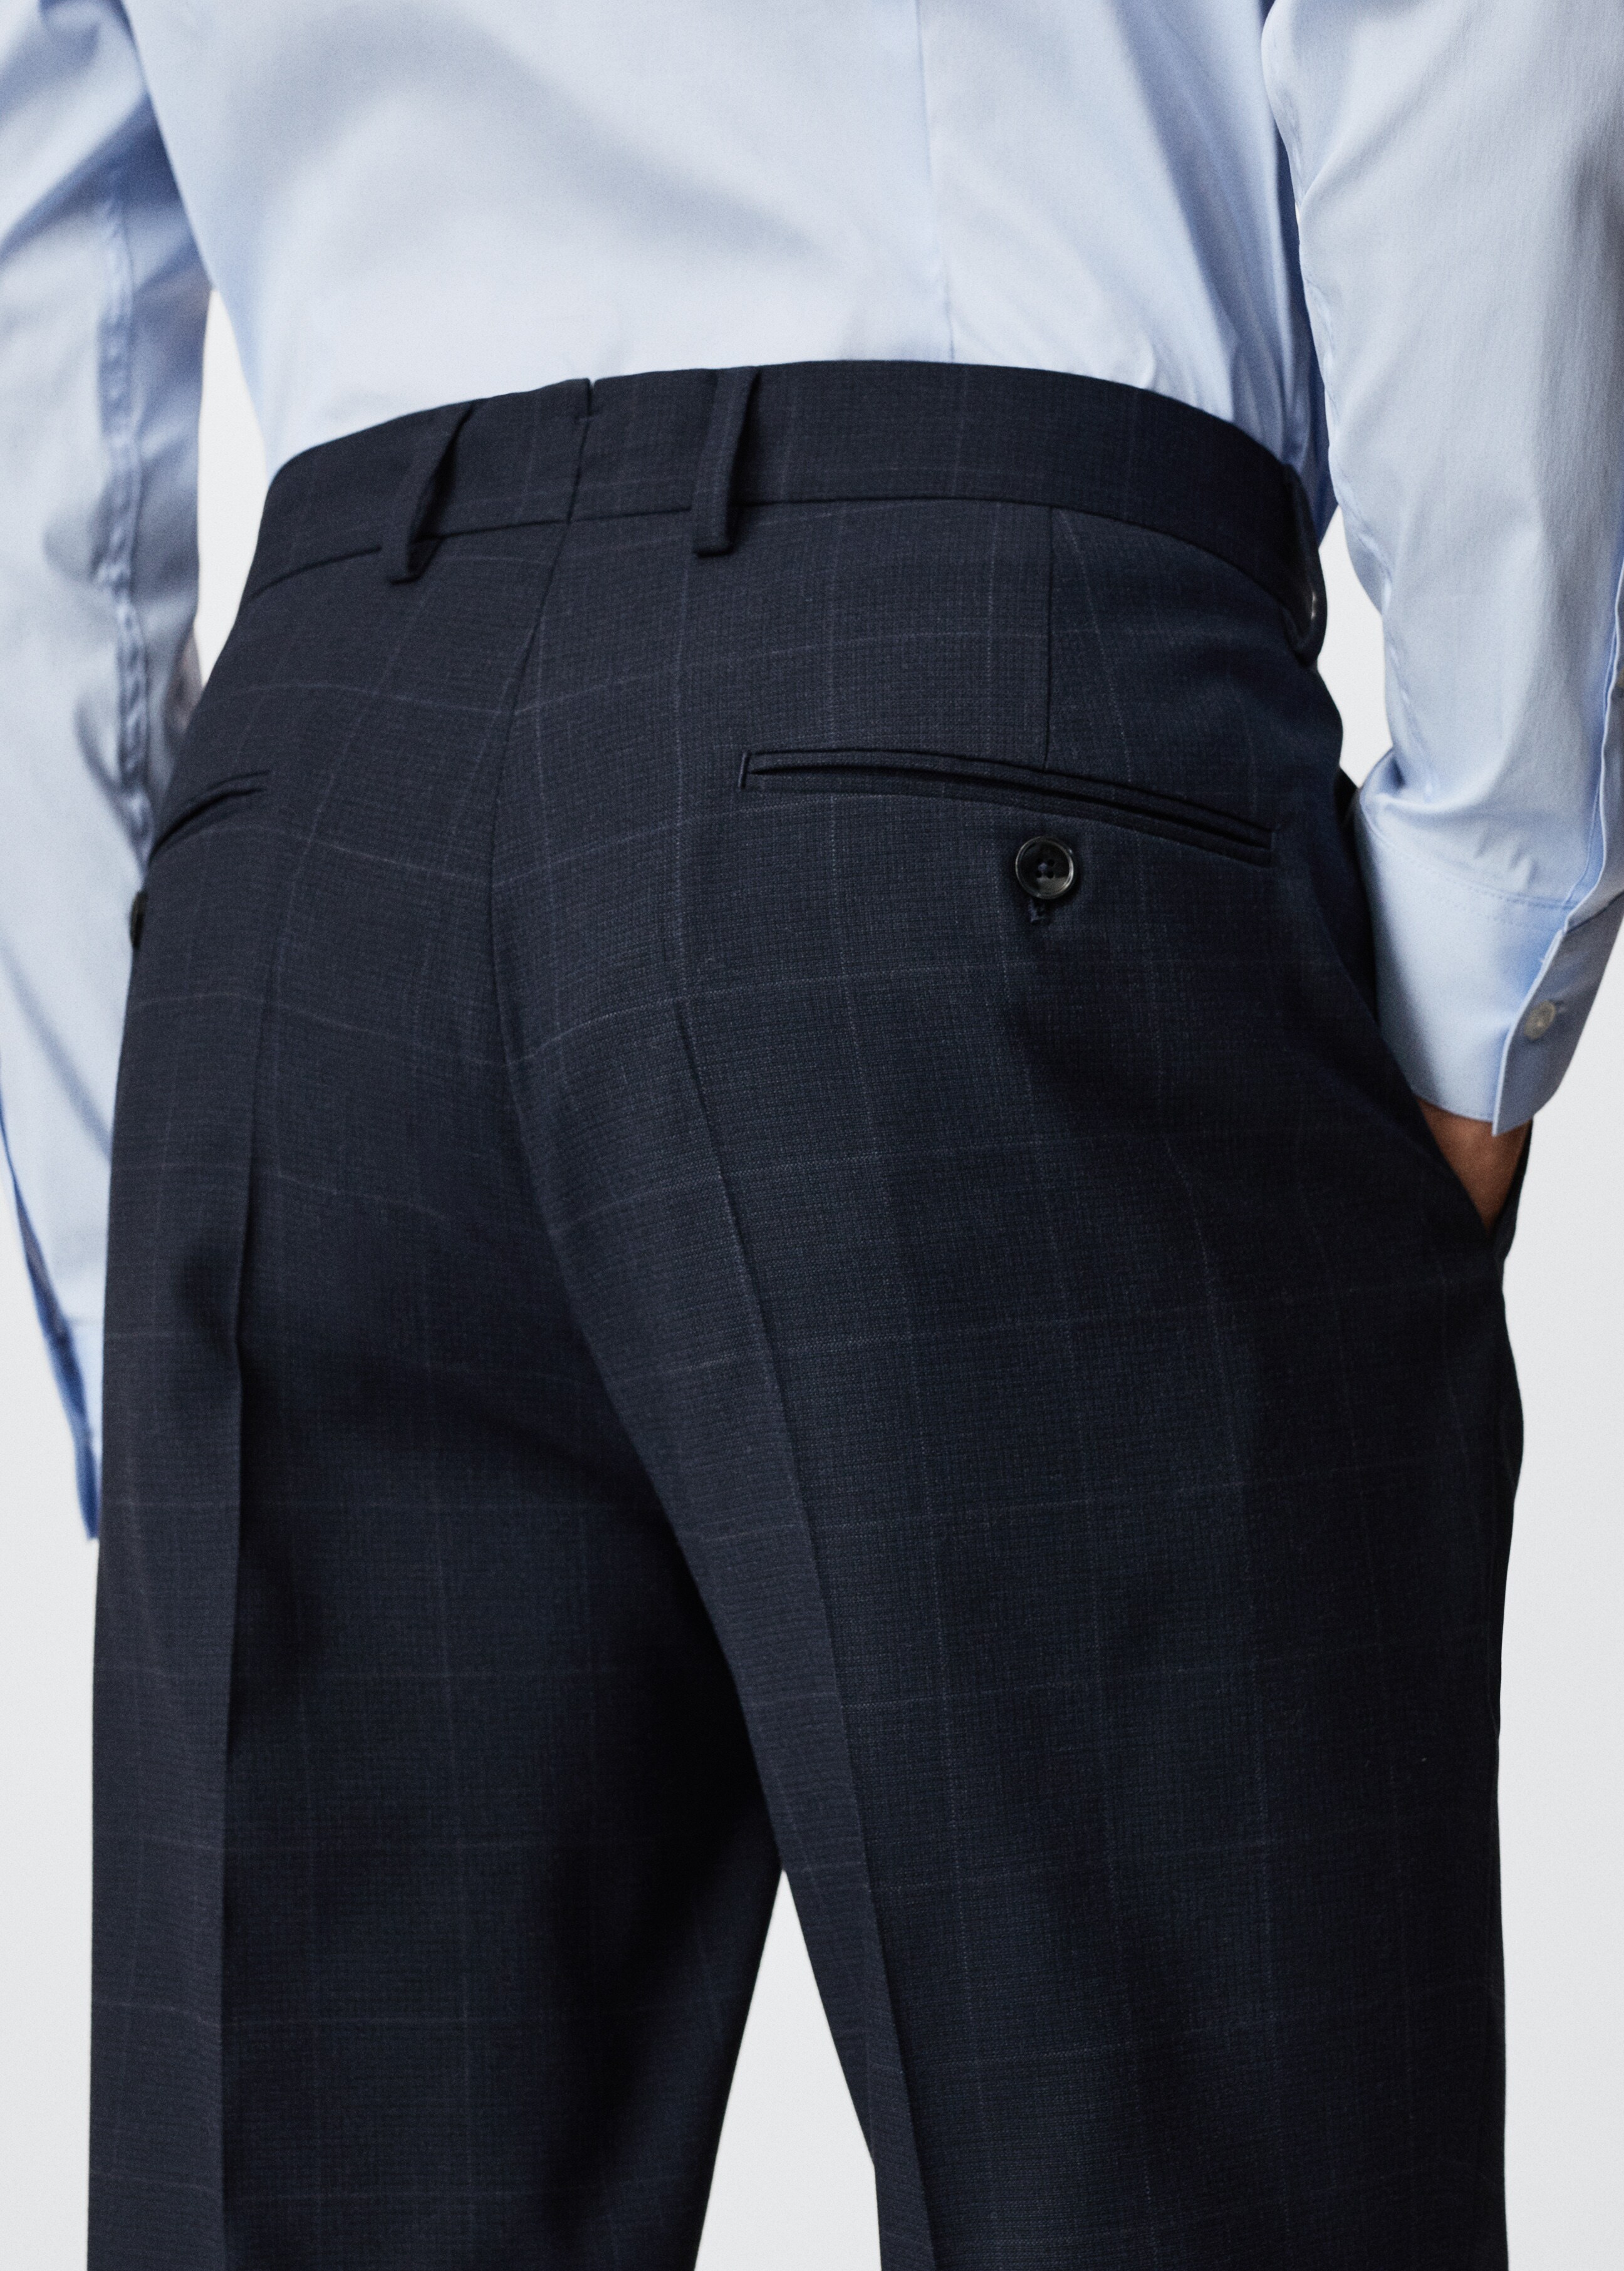 Pantalón traje slim fit cuadros - Detalle del artículo 3